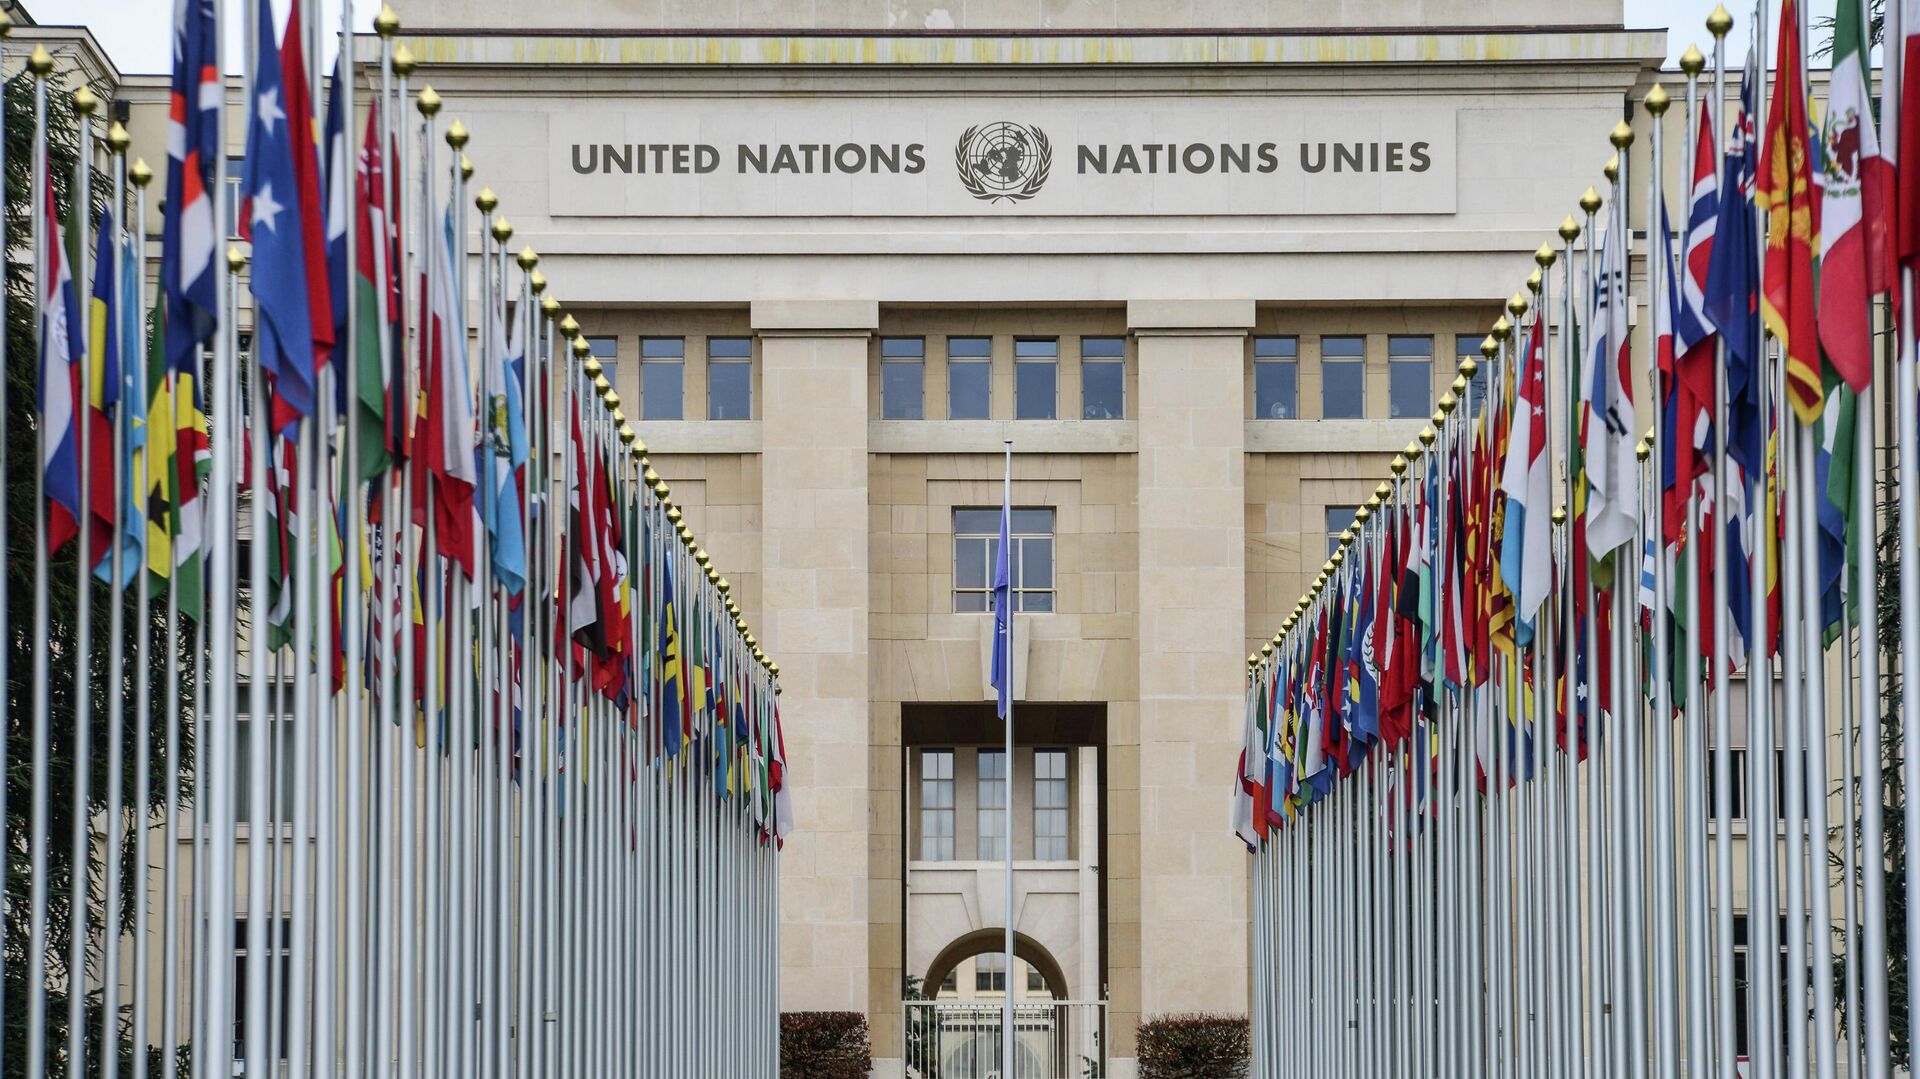 Аллея флагов возле здания Организации Объединённых Наций (ООН) в Женеве. - Sputnik Грузия, 1920, 12.09.2022